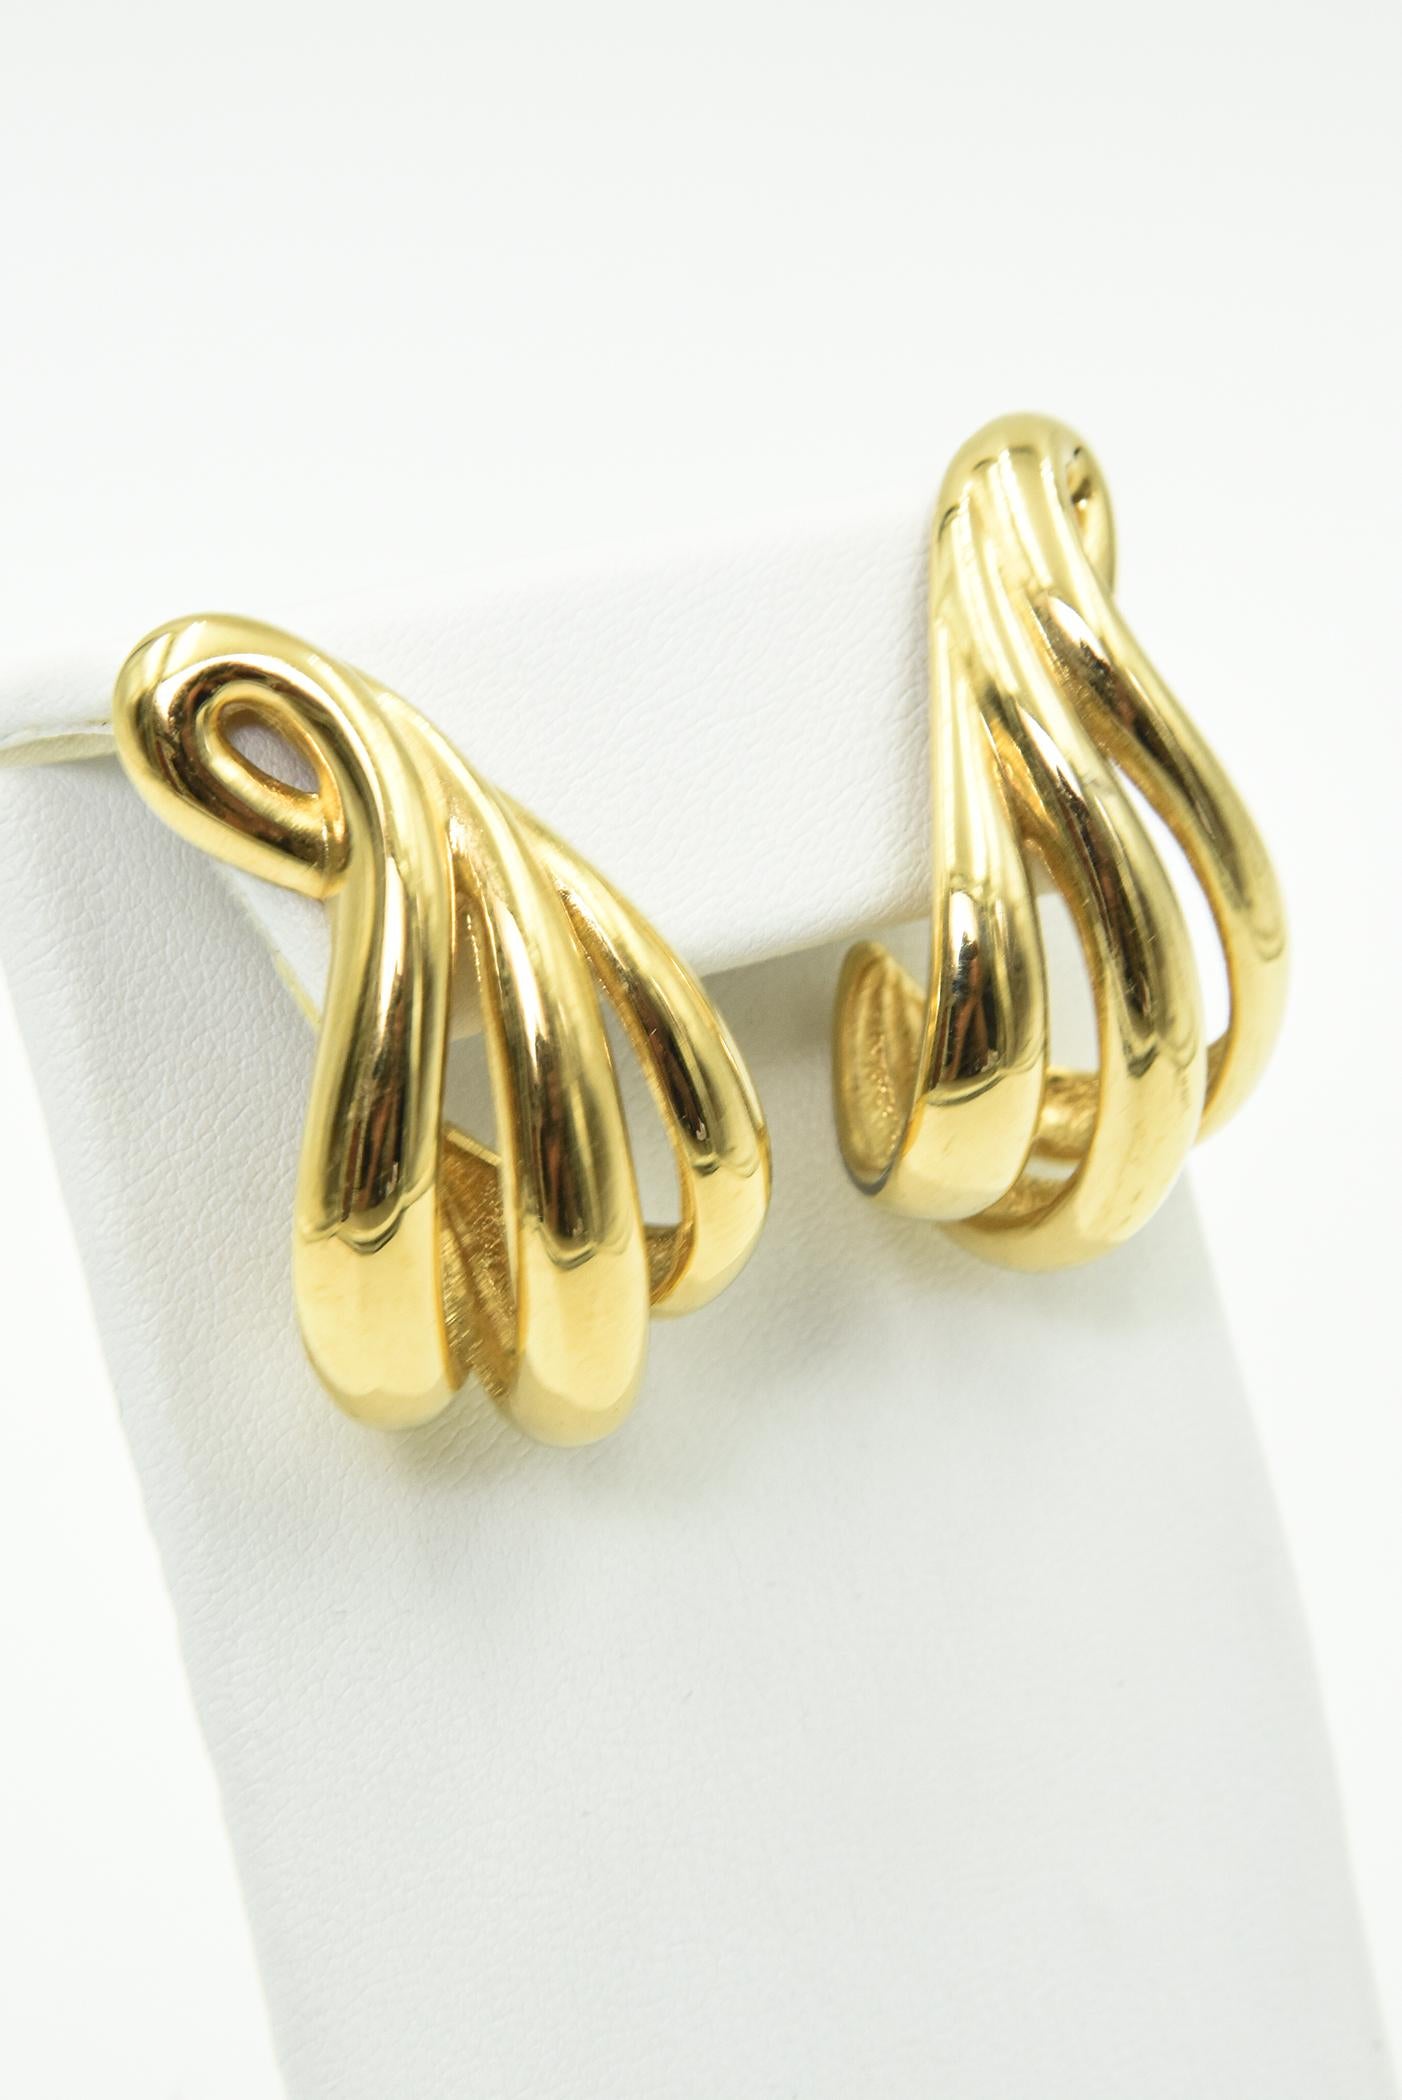 dottilove earrings 18k gold plated